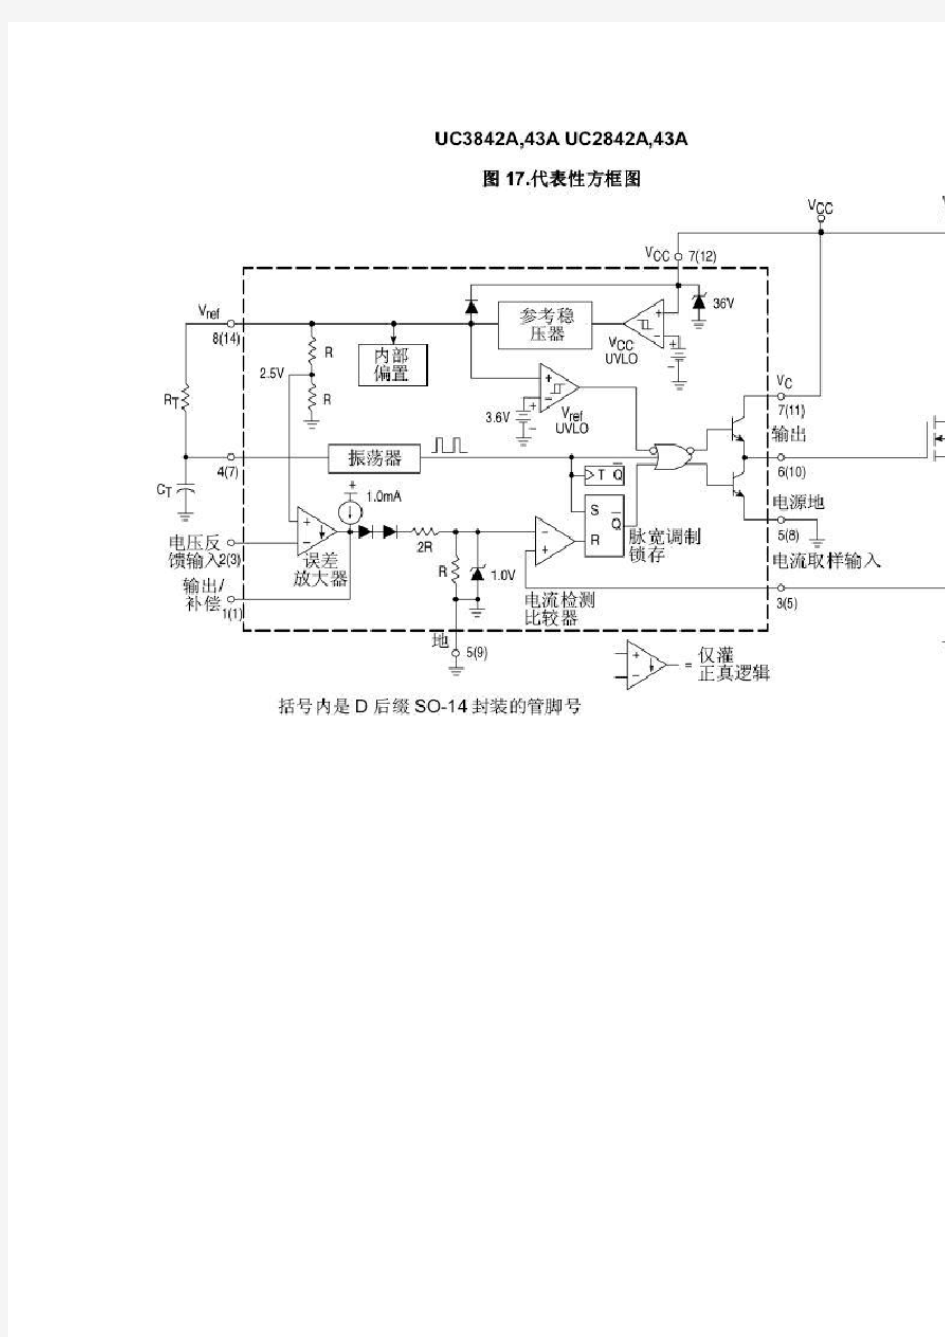 UC3842-UC3843工作原理、参数资料、电路分析及维修方法-v